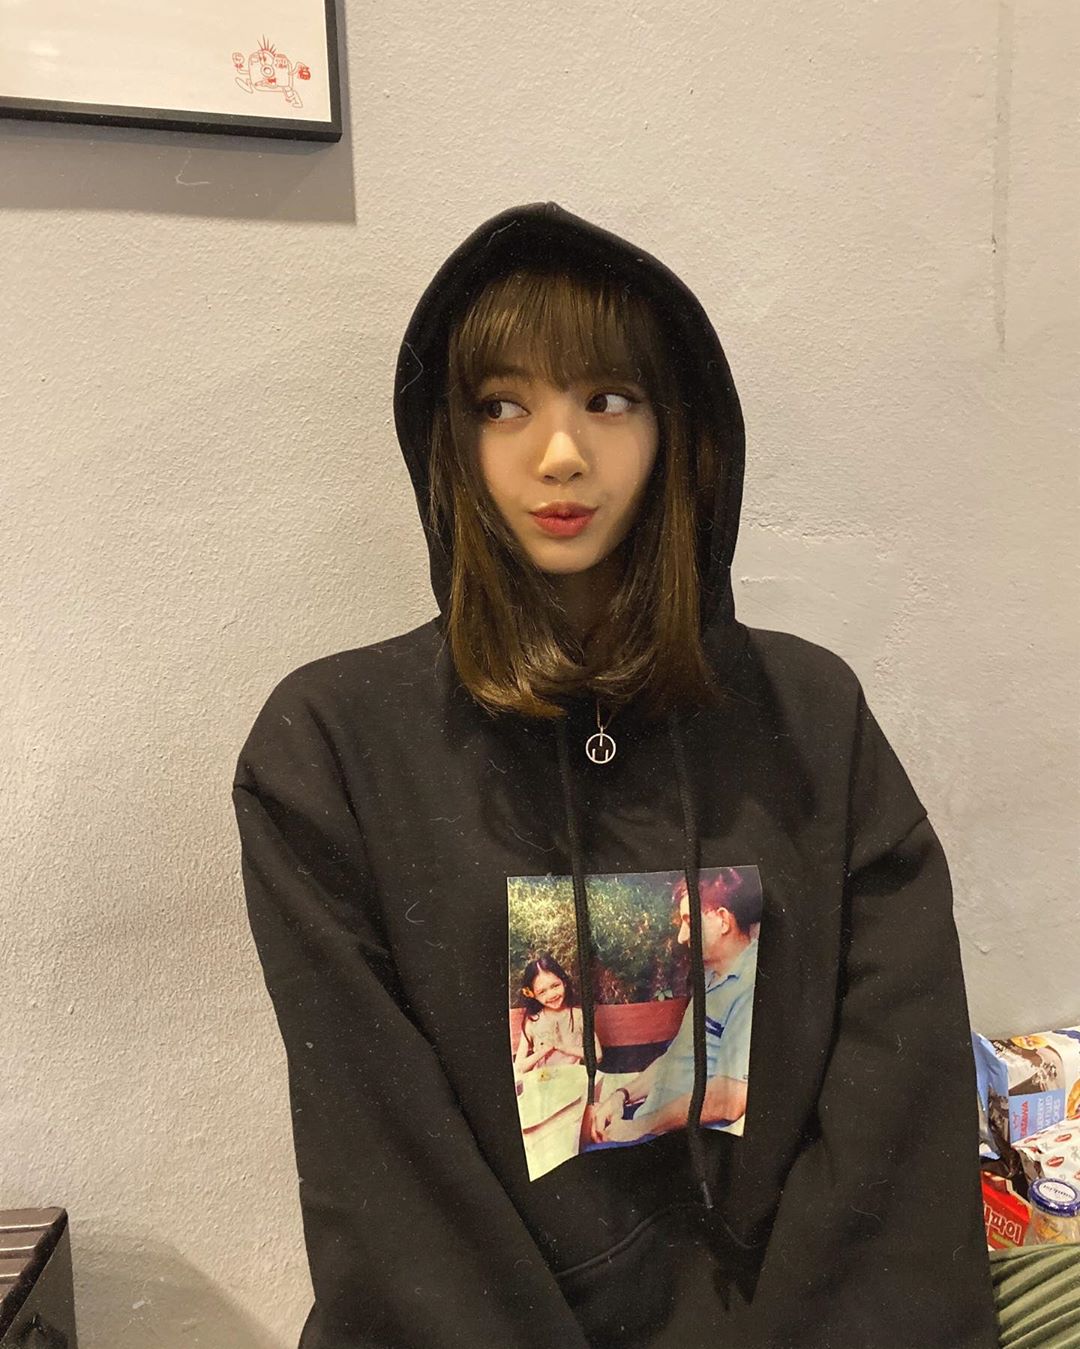 Lisa shared new Instagram photos wearing Baby Lisa hoodie